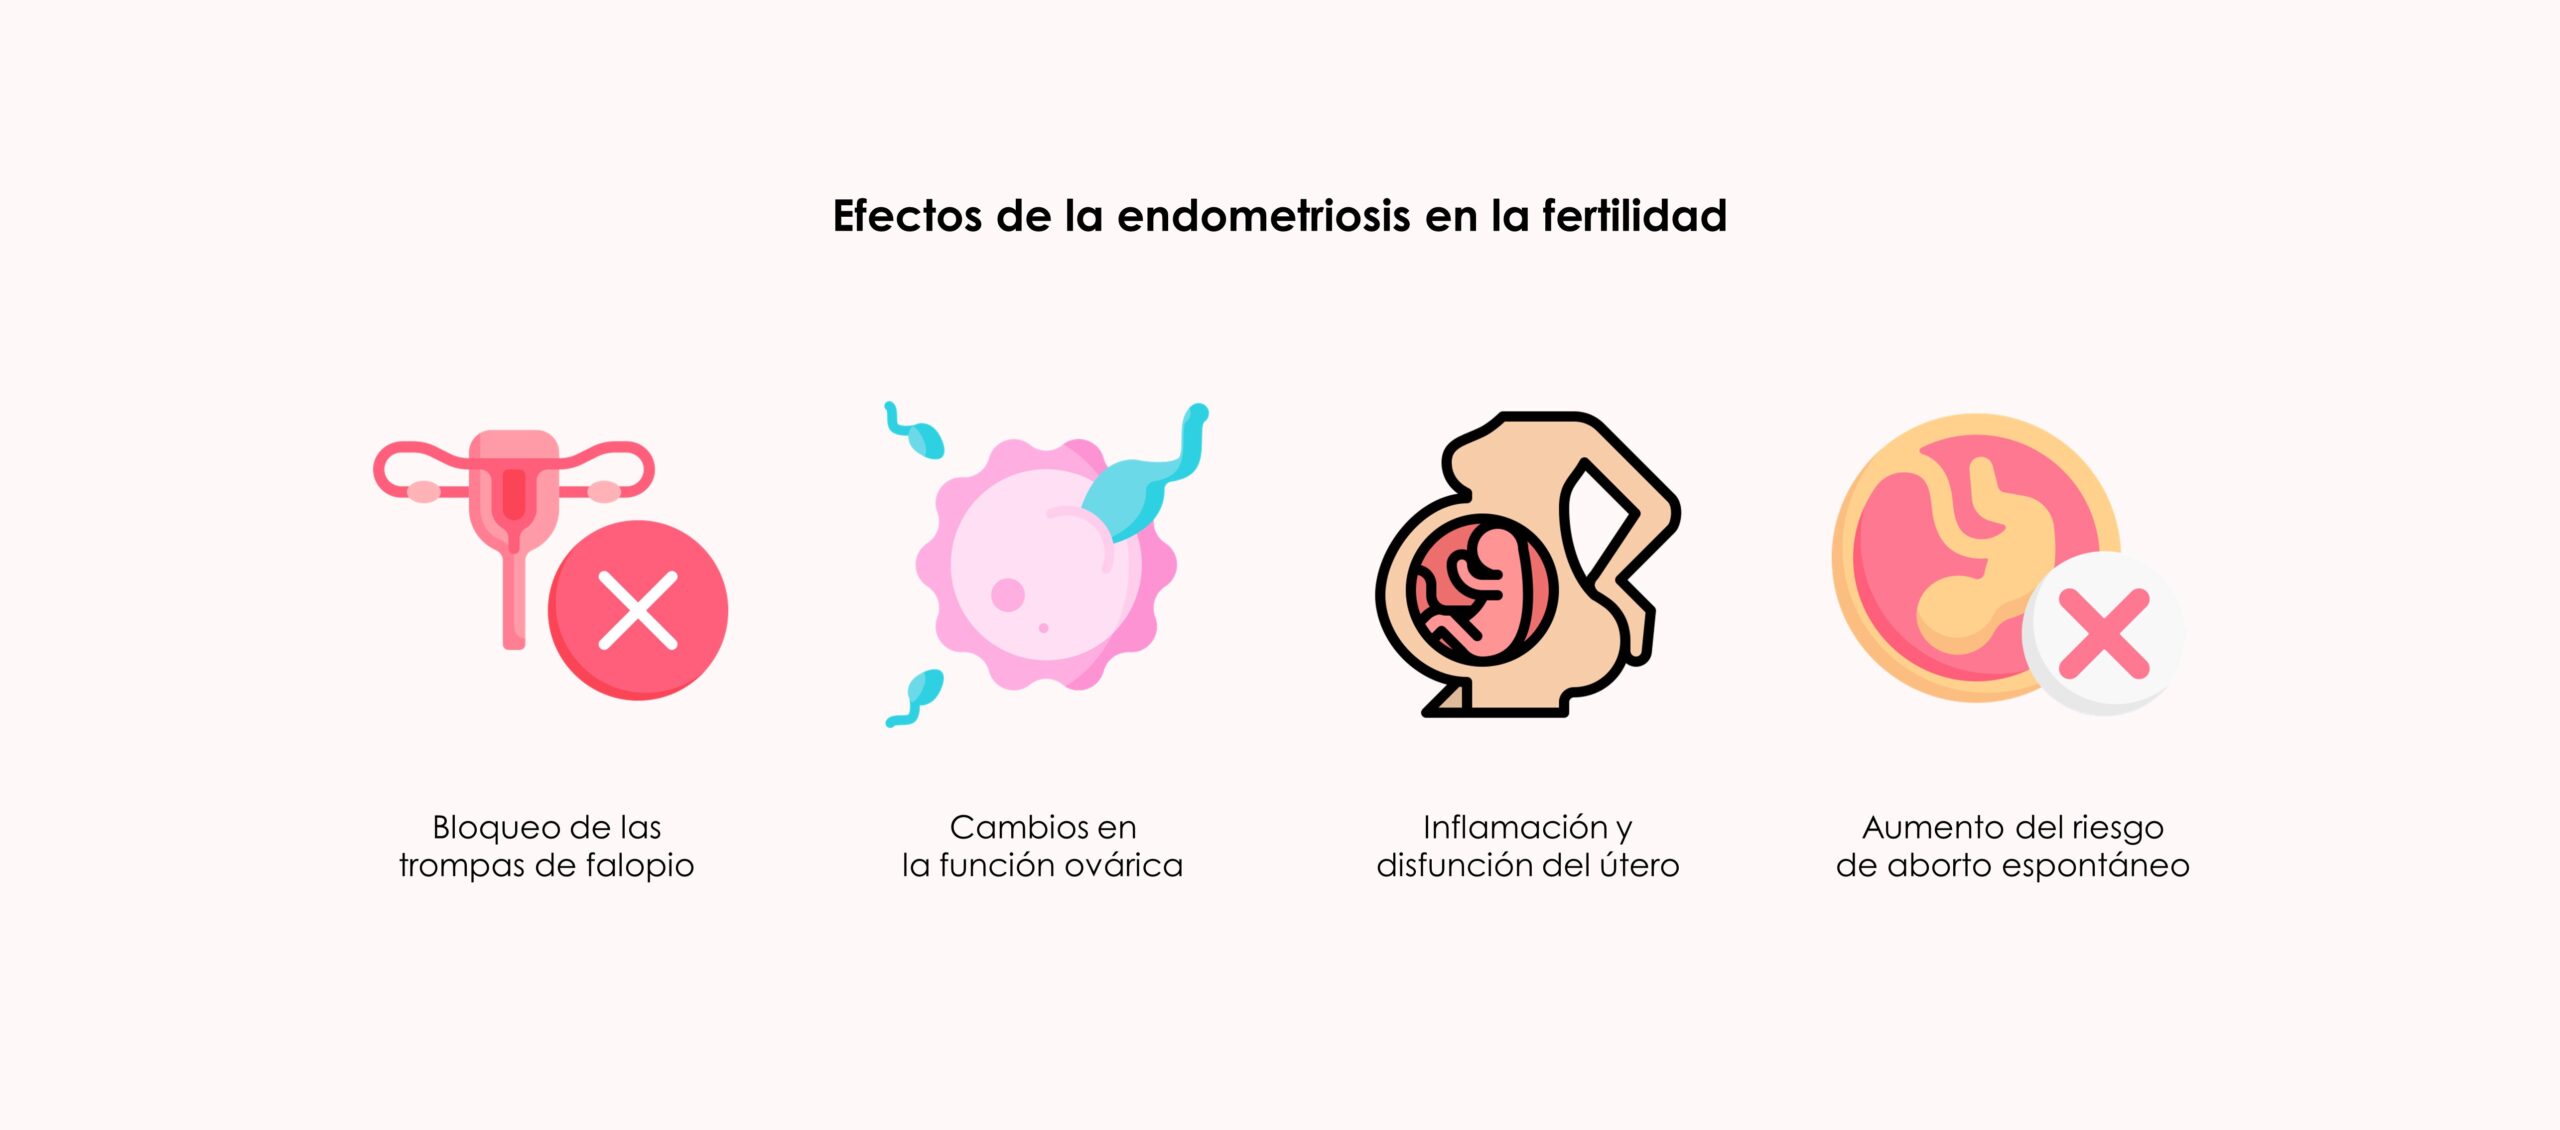 Efecto de la endometriosis en la fertilidad